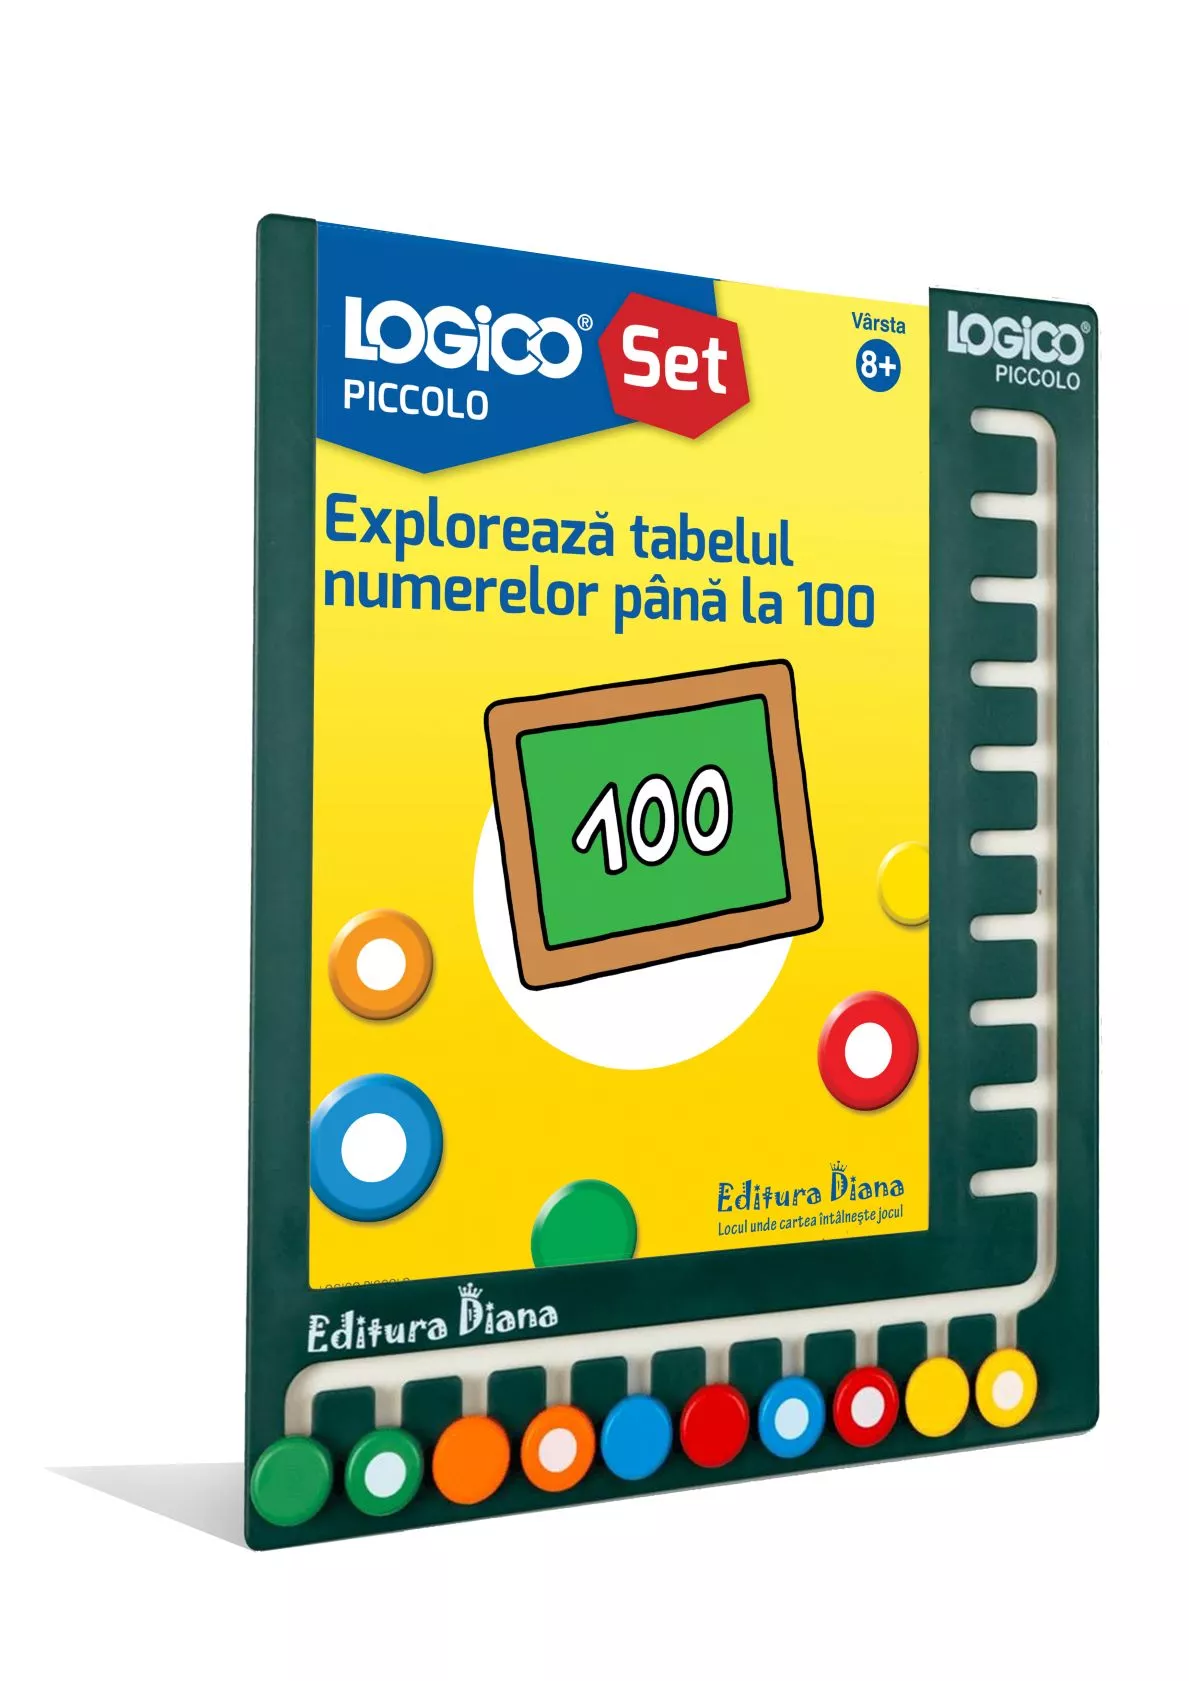 LOGICO PICCOLO - SET CU RAMĂ - Explorează tabelul numerelor până la 100 (8+)